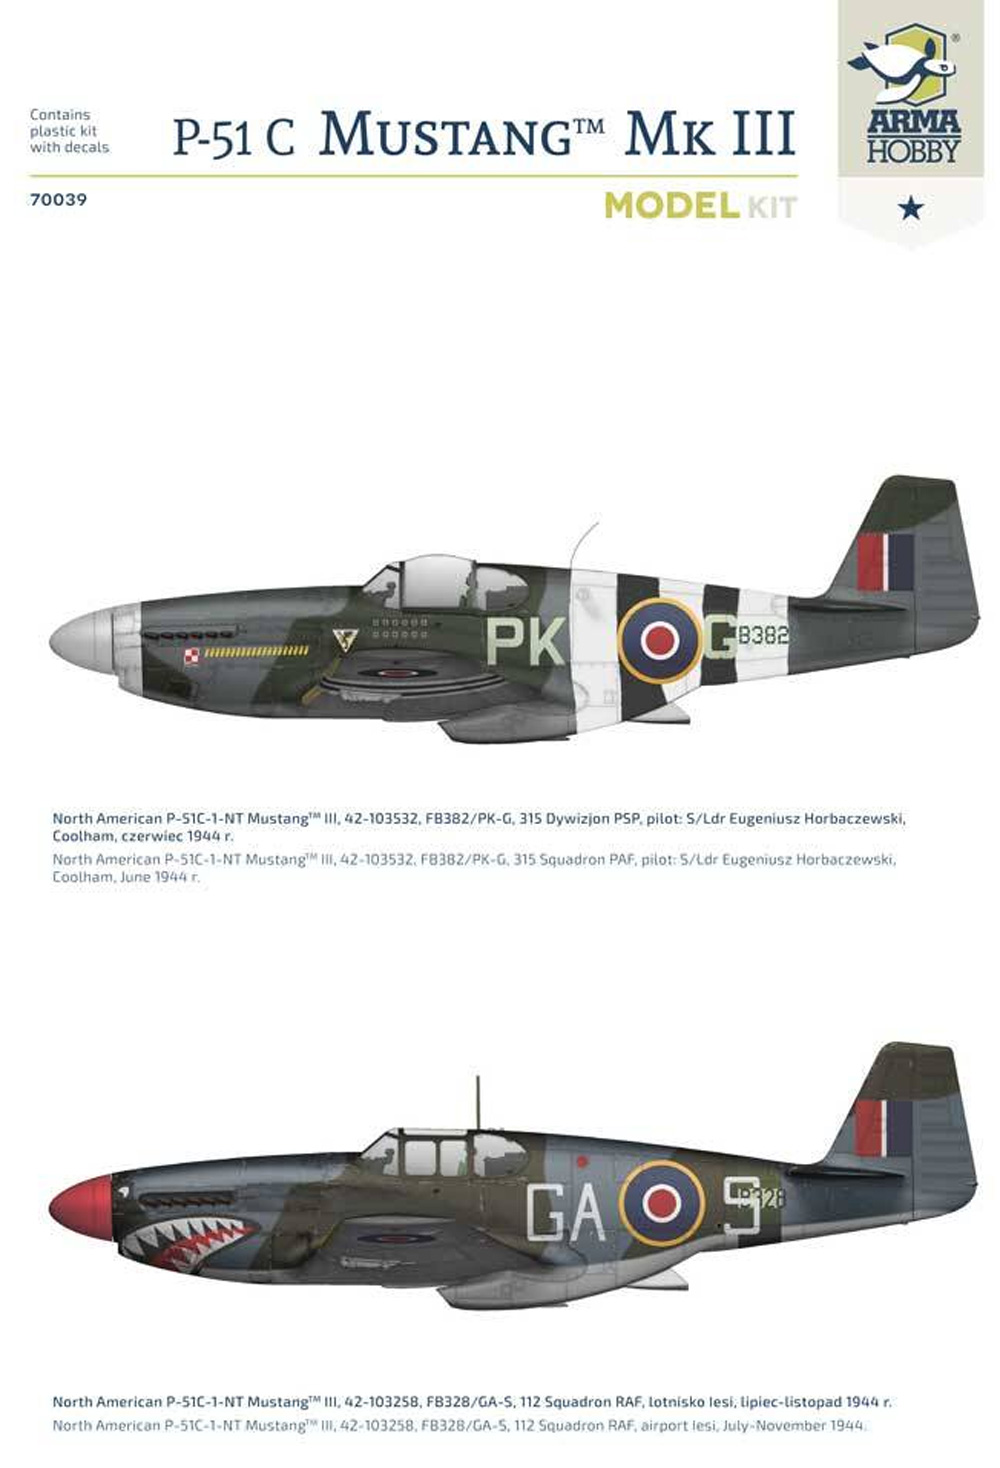 P-51C マスタング Mk.3 プラモデル (アルマホビー 1/72 エアクラフト プラモデル No.70039) 商品画像_1